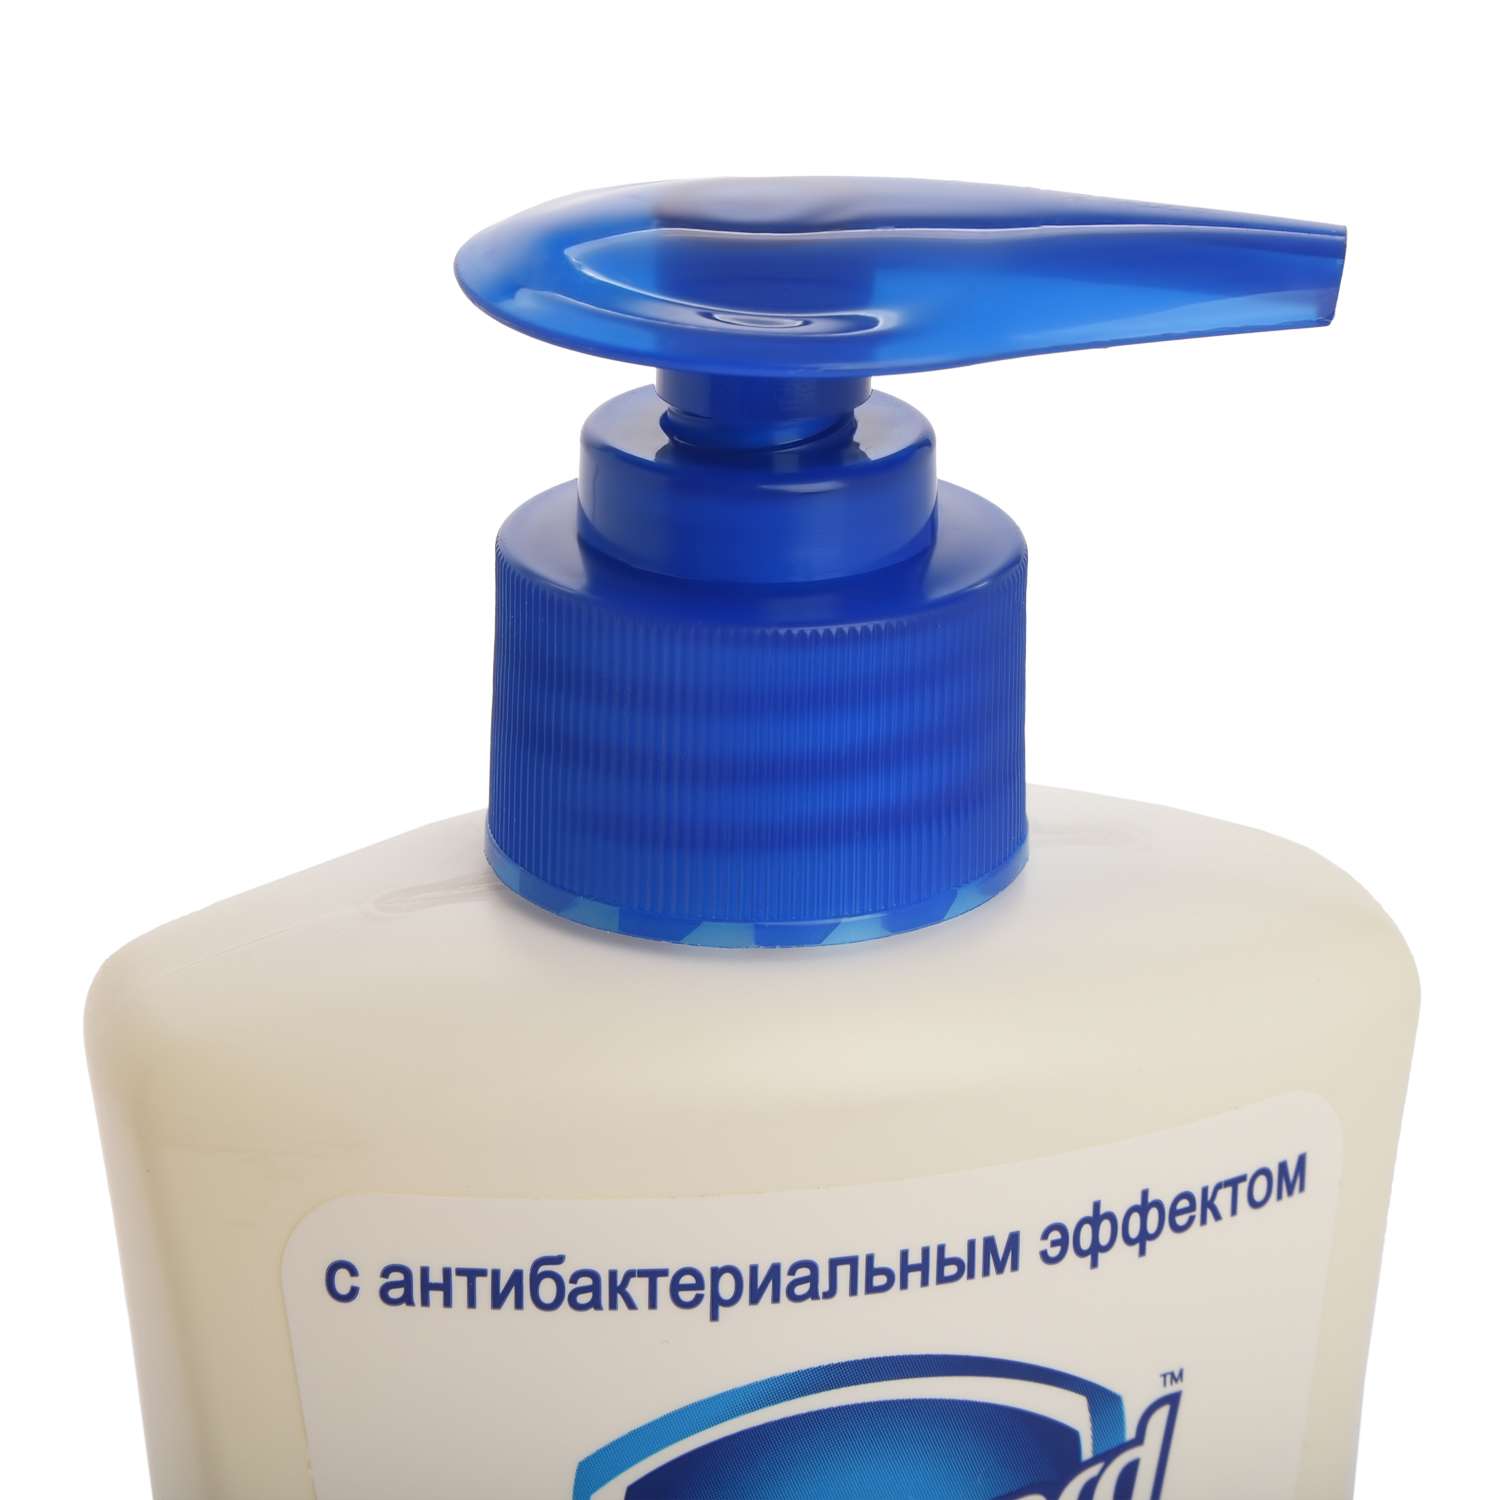 Жидкое мыло Safeguard антибактериальное Свежесть лимона 225 мл - фото 3